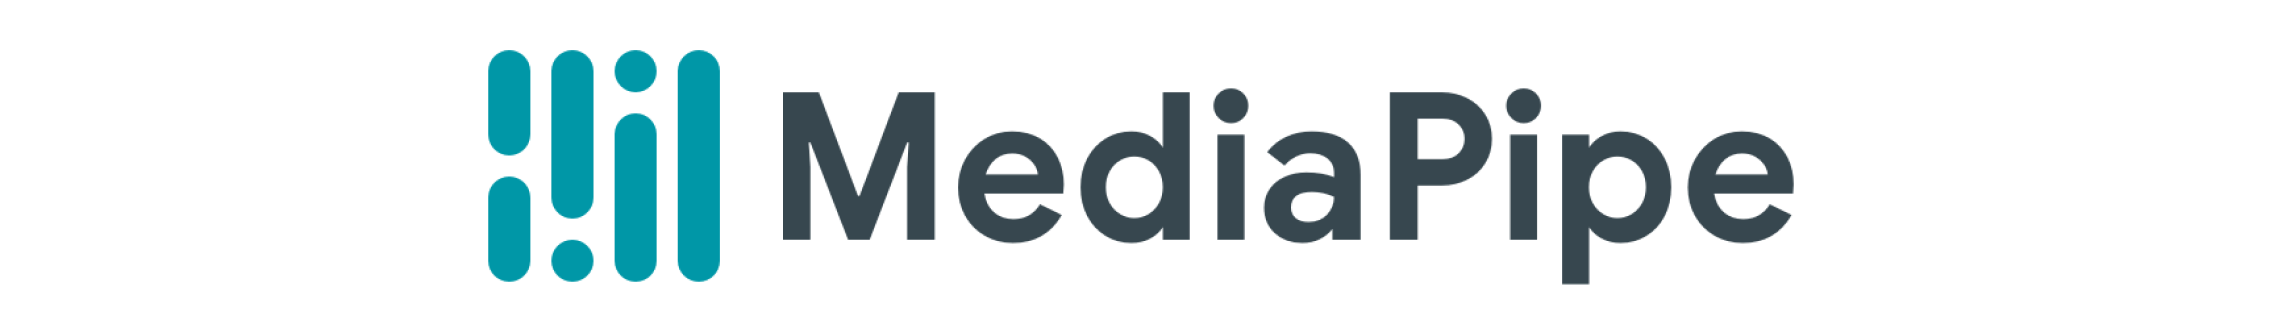 mediapipe-logo